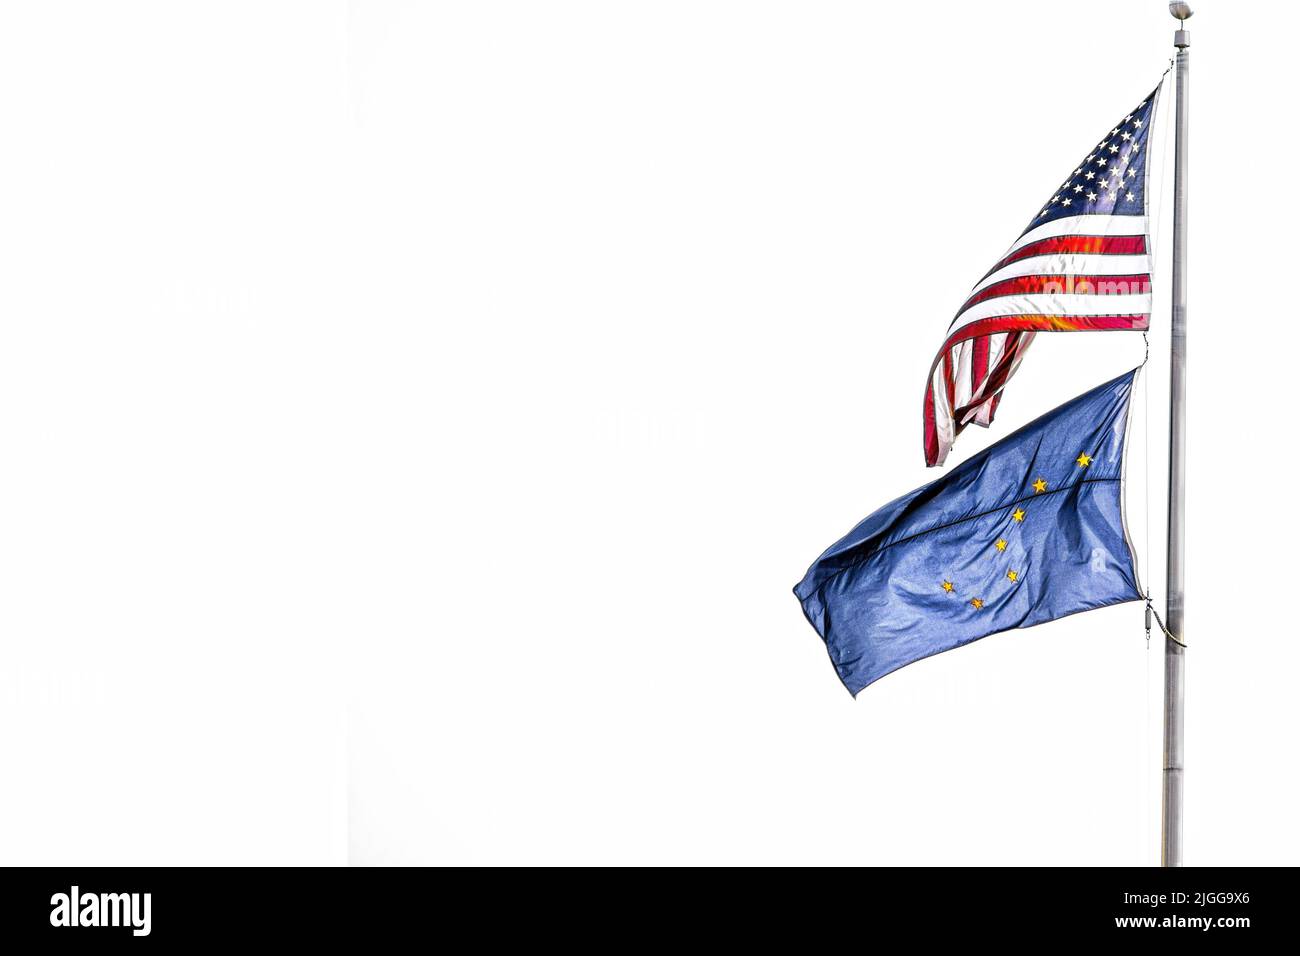 Bandiere americane e dell'Alaska che volano dal palo su un lato dell'immagine - isolate su bianco - stanza per la copia Foto Stock